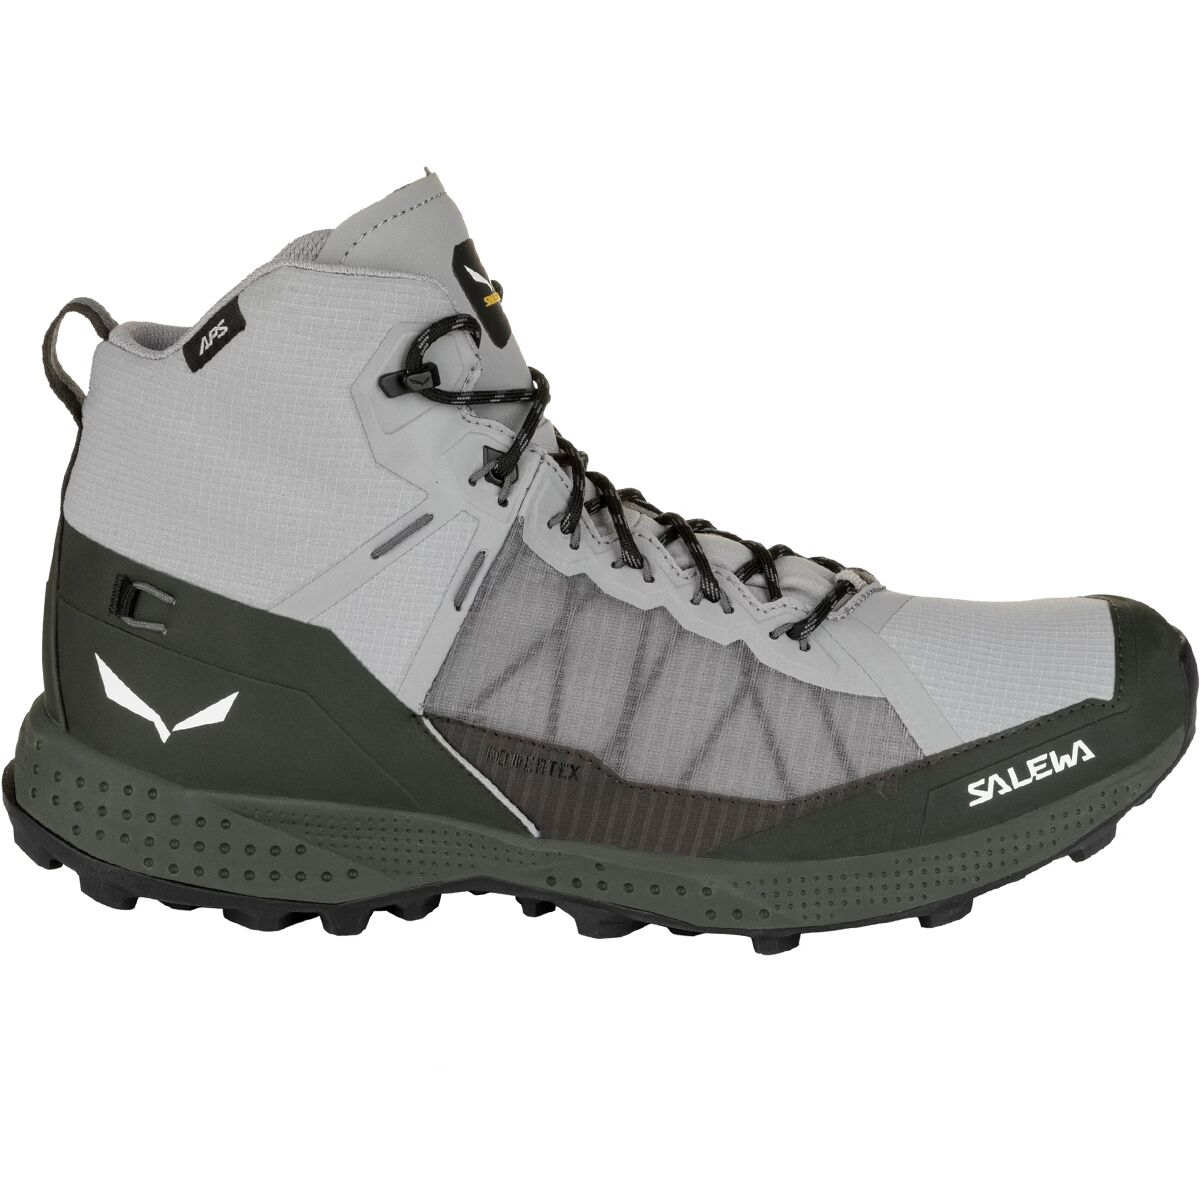 Salewa Pedroc Pro Mid PTX Hiking Boot - Men's